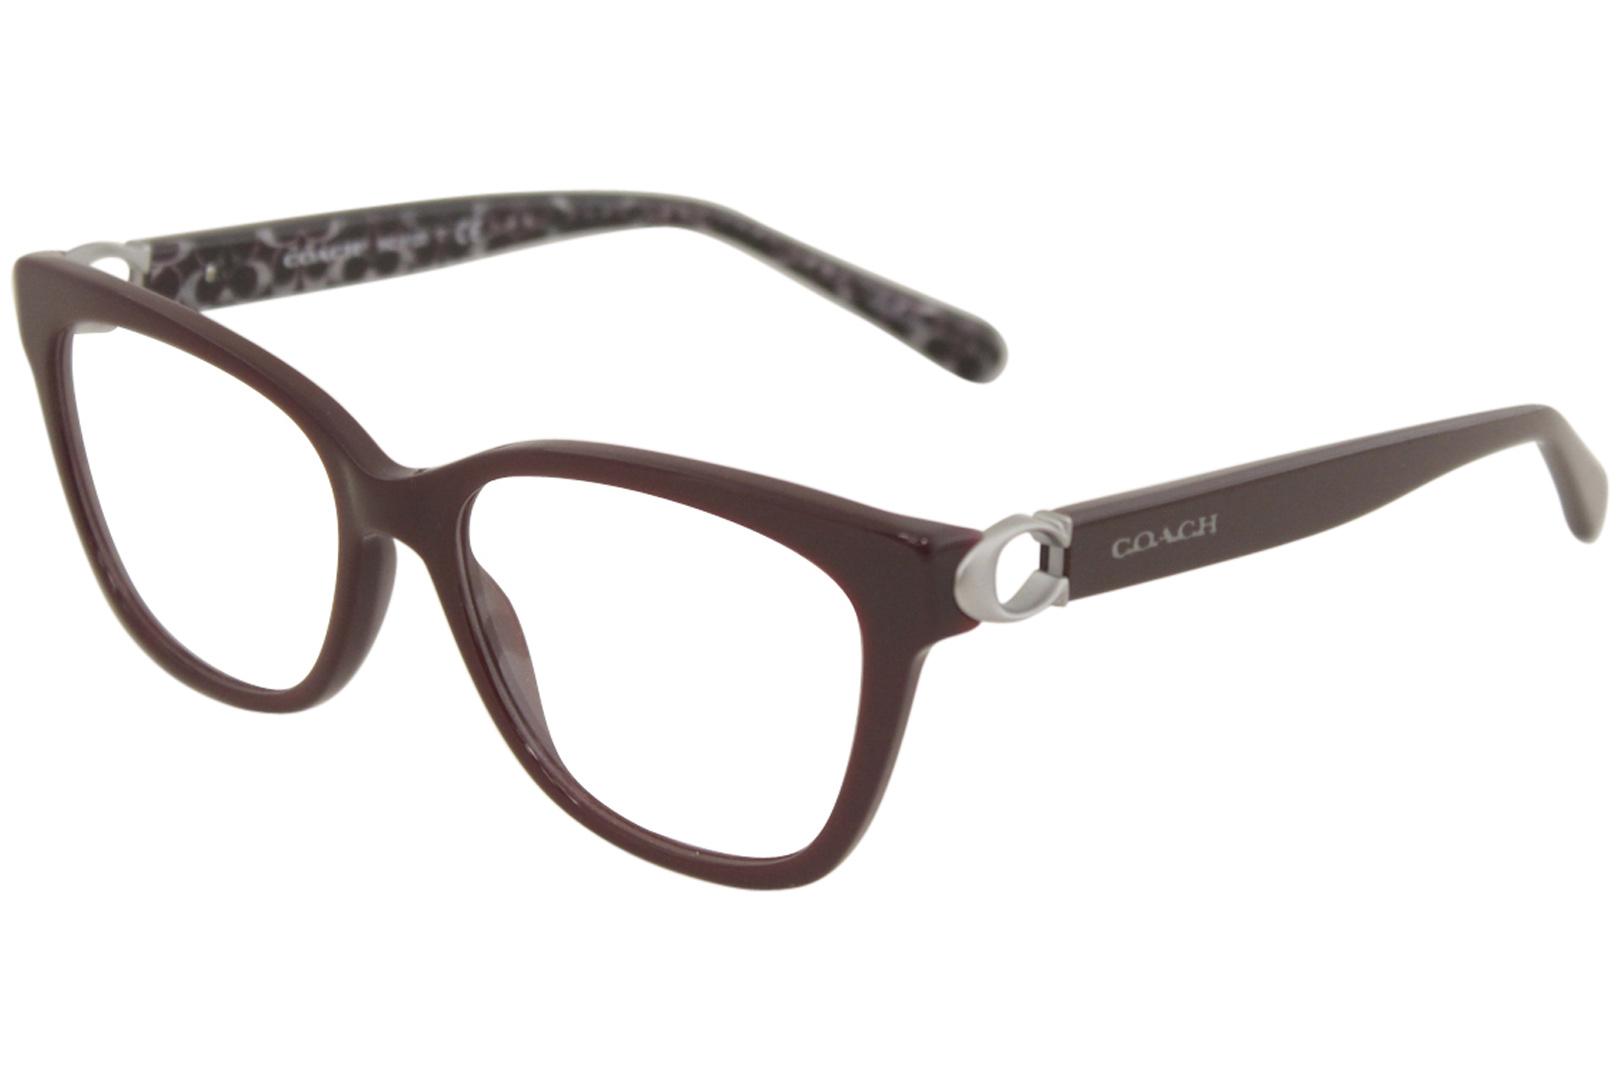 Coach Women S Eyeglasses Hc6107 Hc 6107 Full Rim Optical Frame